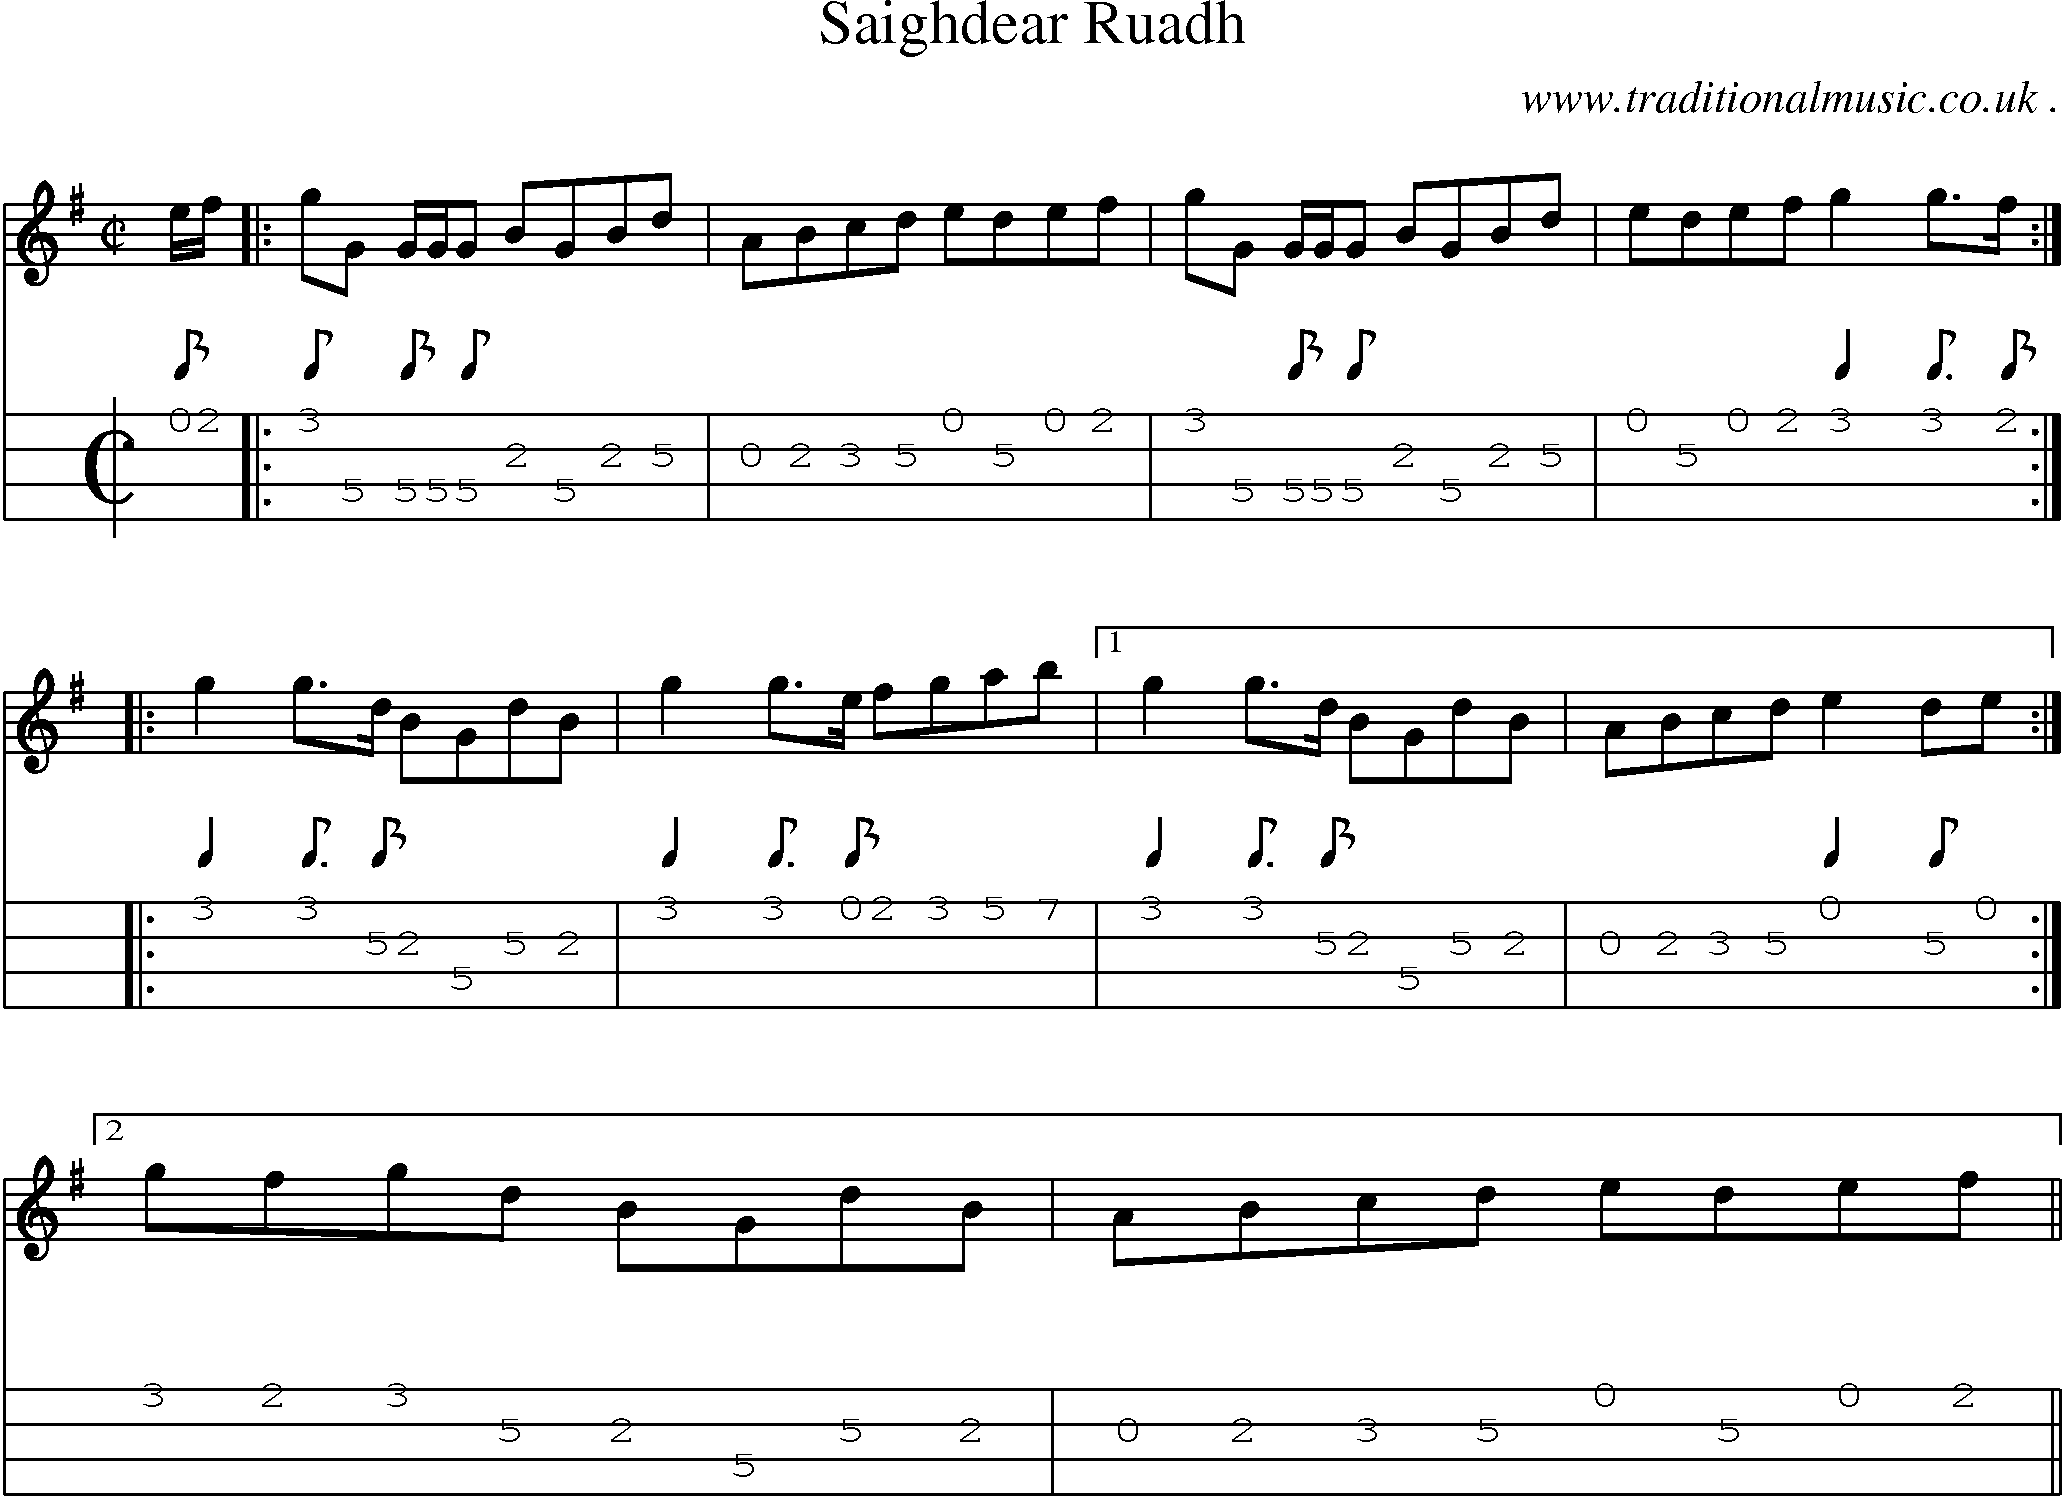 Sheet-music  score, Chords and Mandolin Tabs for Saighdear Ruadh